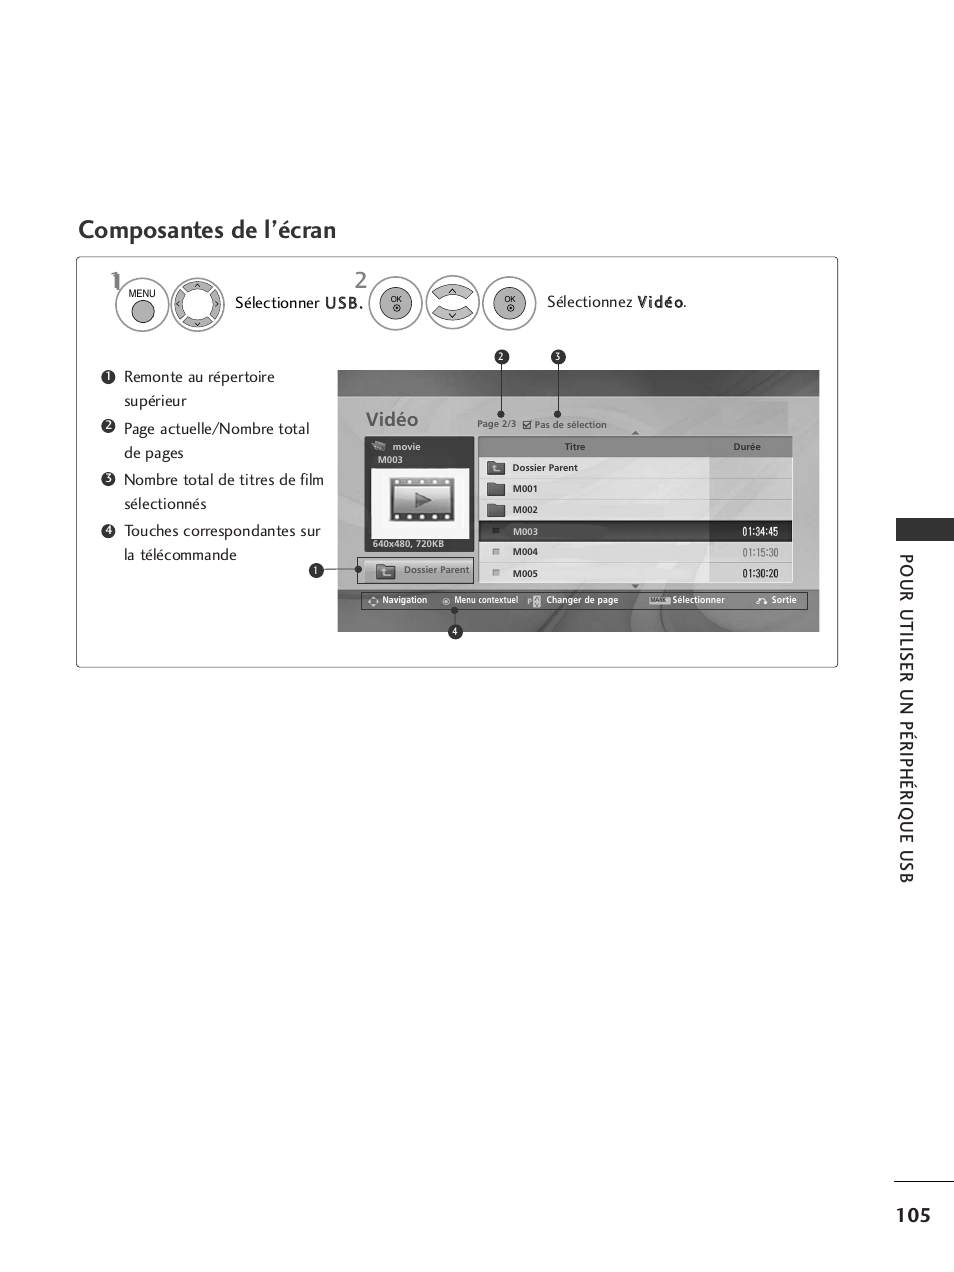 Composantes de l’écran, Pour utiliser un périphérique usb, Vidéo | LG 32LH40 Manuel d'utilisation | Page 107 / 180